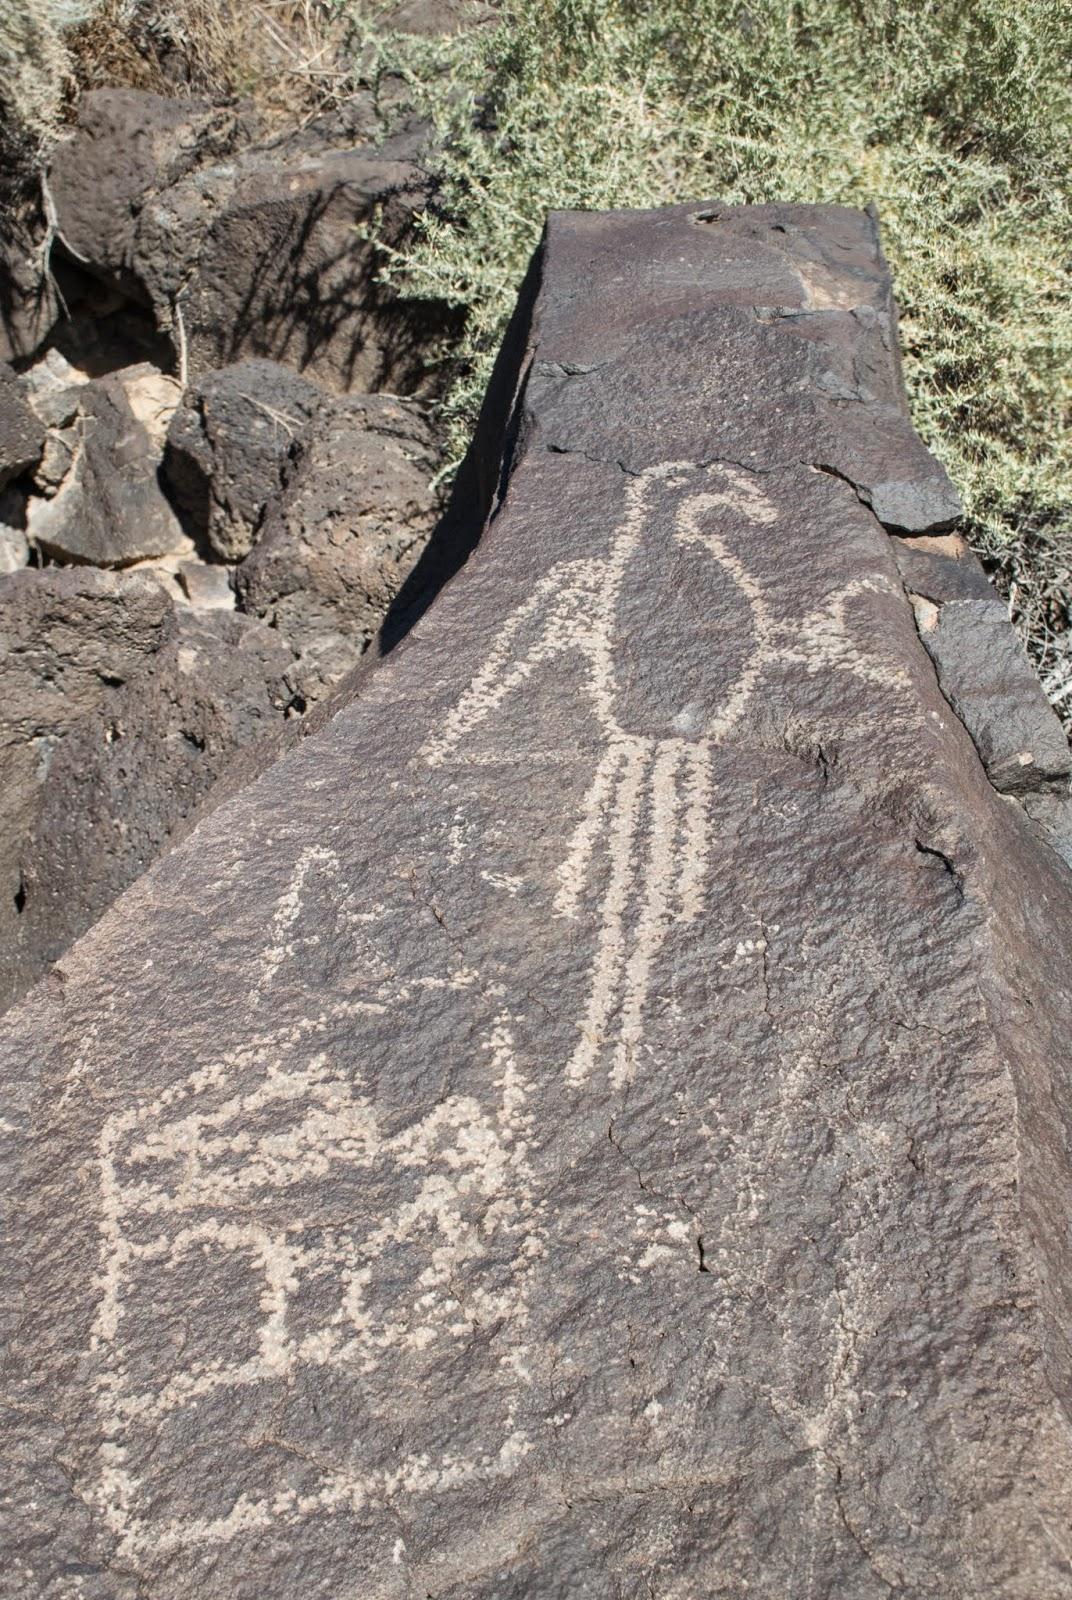 Albuquerque et ses pétroglyphes